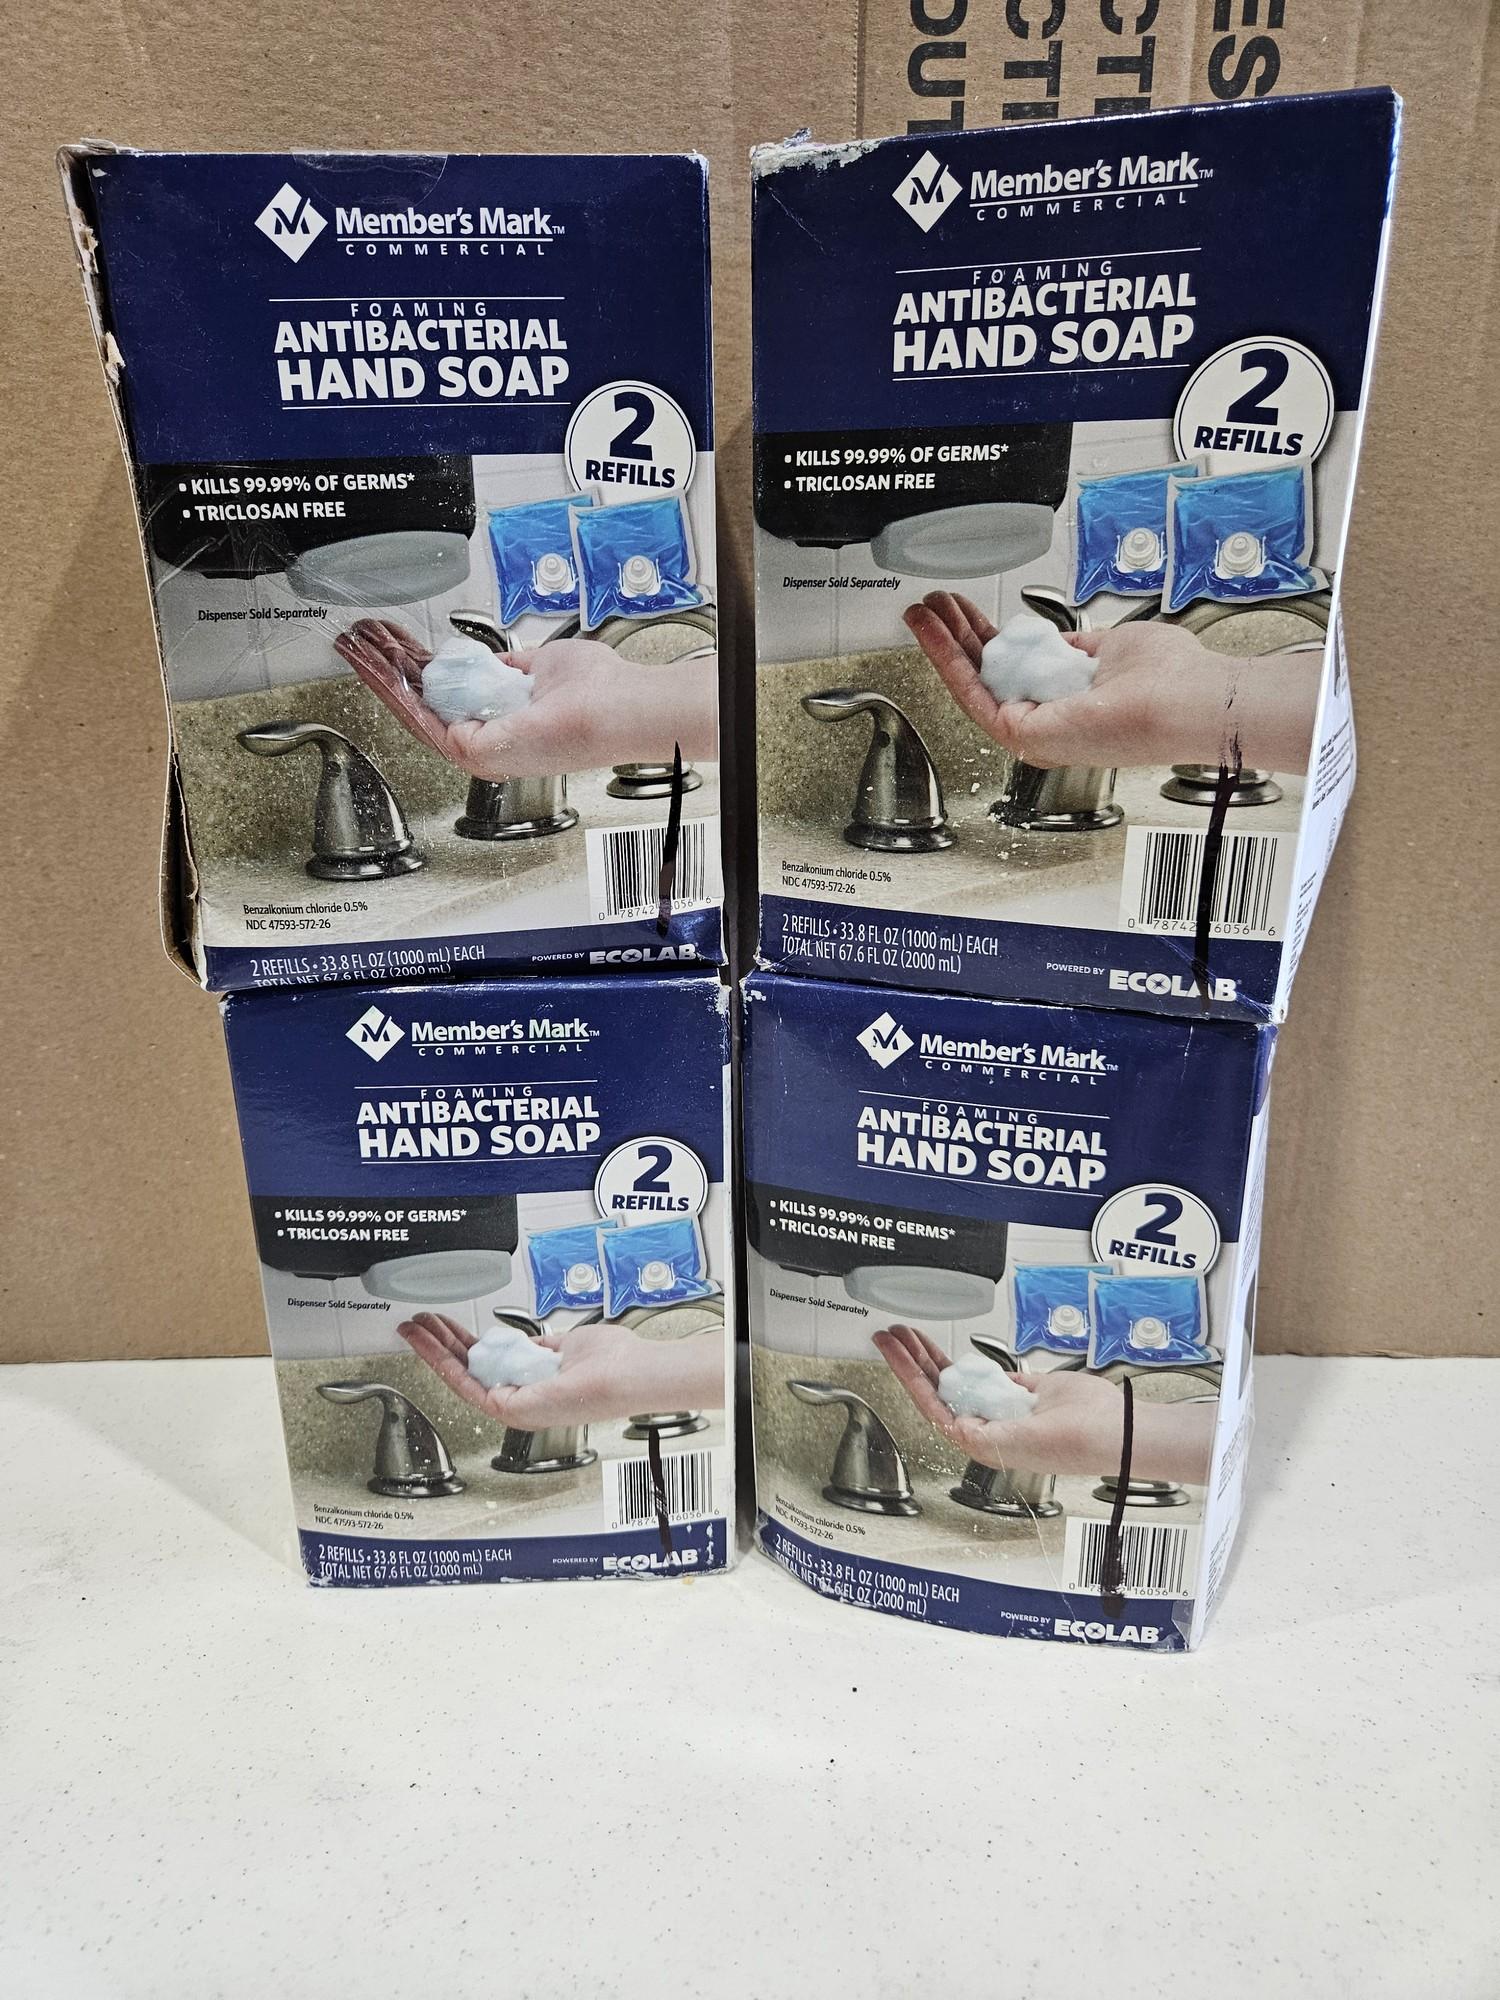 Members Mark Antibacterial Hand Soap / 2 Refills